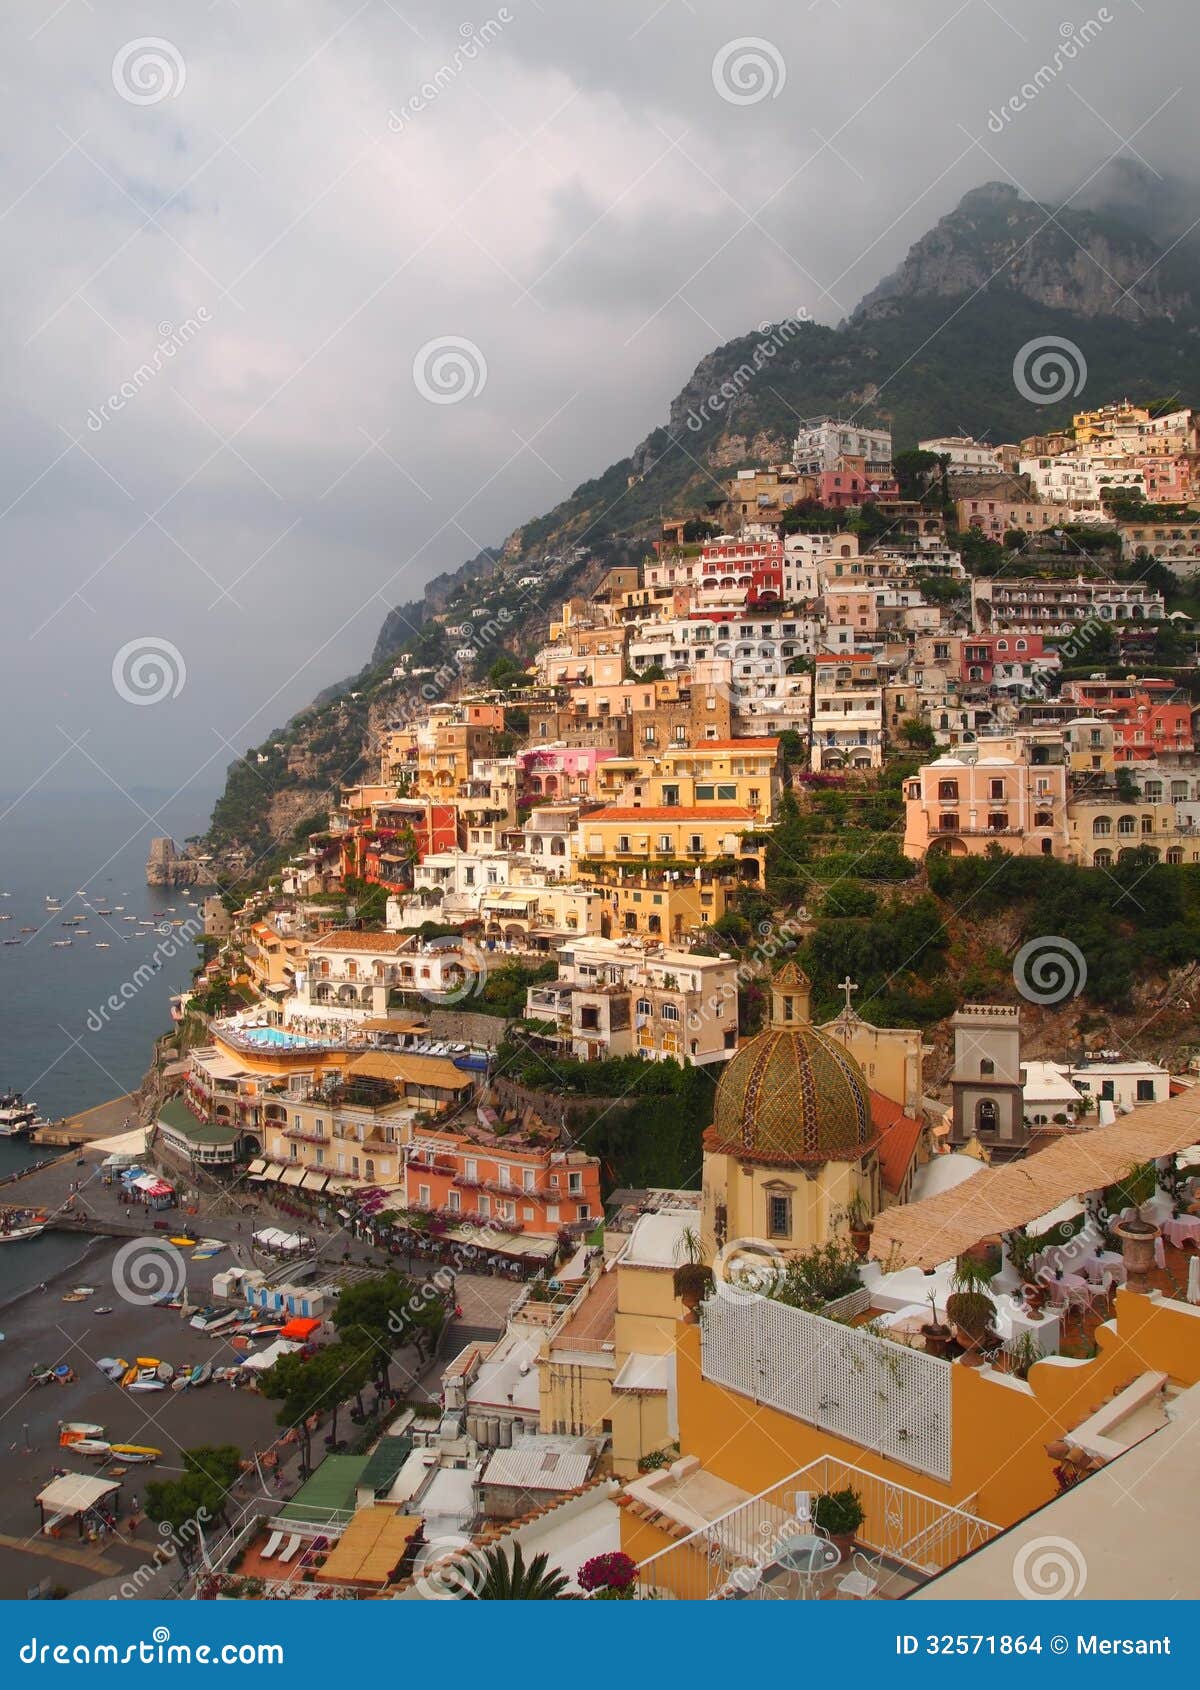 Positano stock photo. Image of houses, colors, positano - 32571864